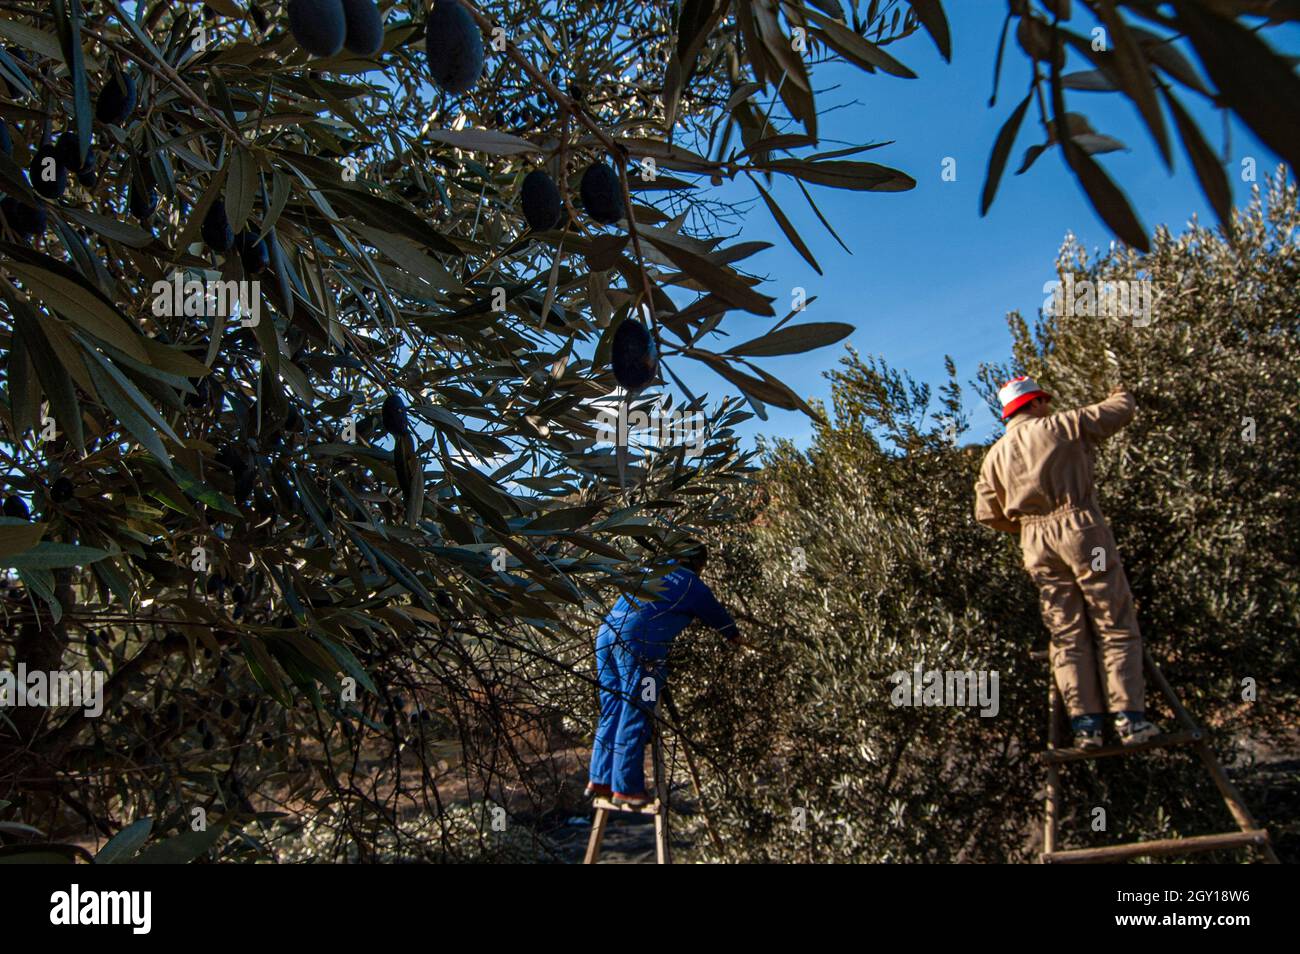 Récolte d'olives pour la fabrication d'huile d'olive Banque D'Images